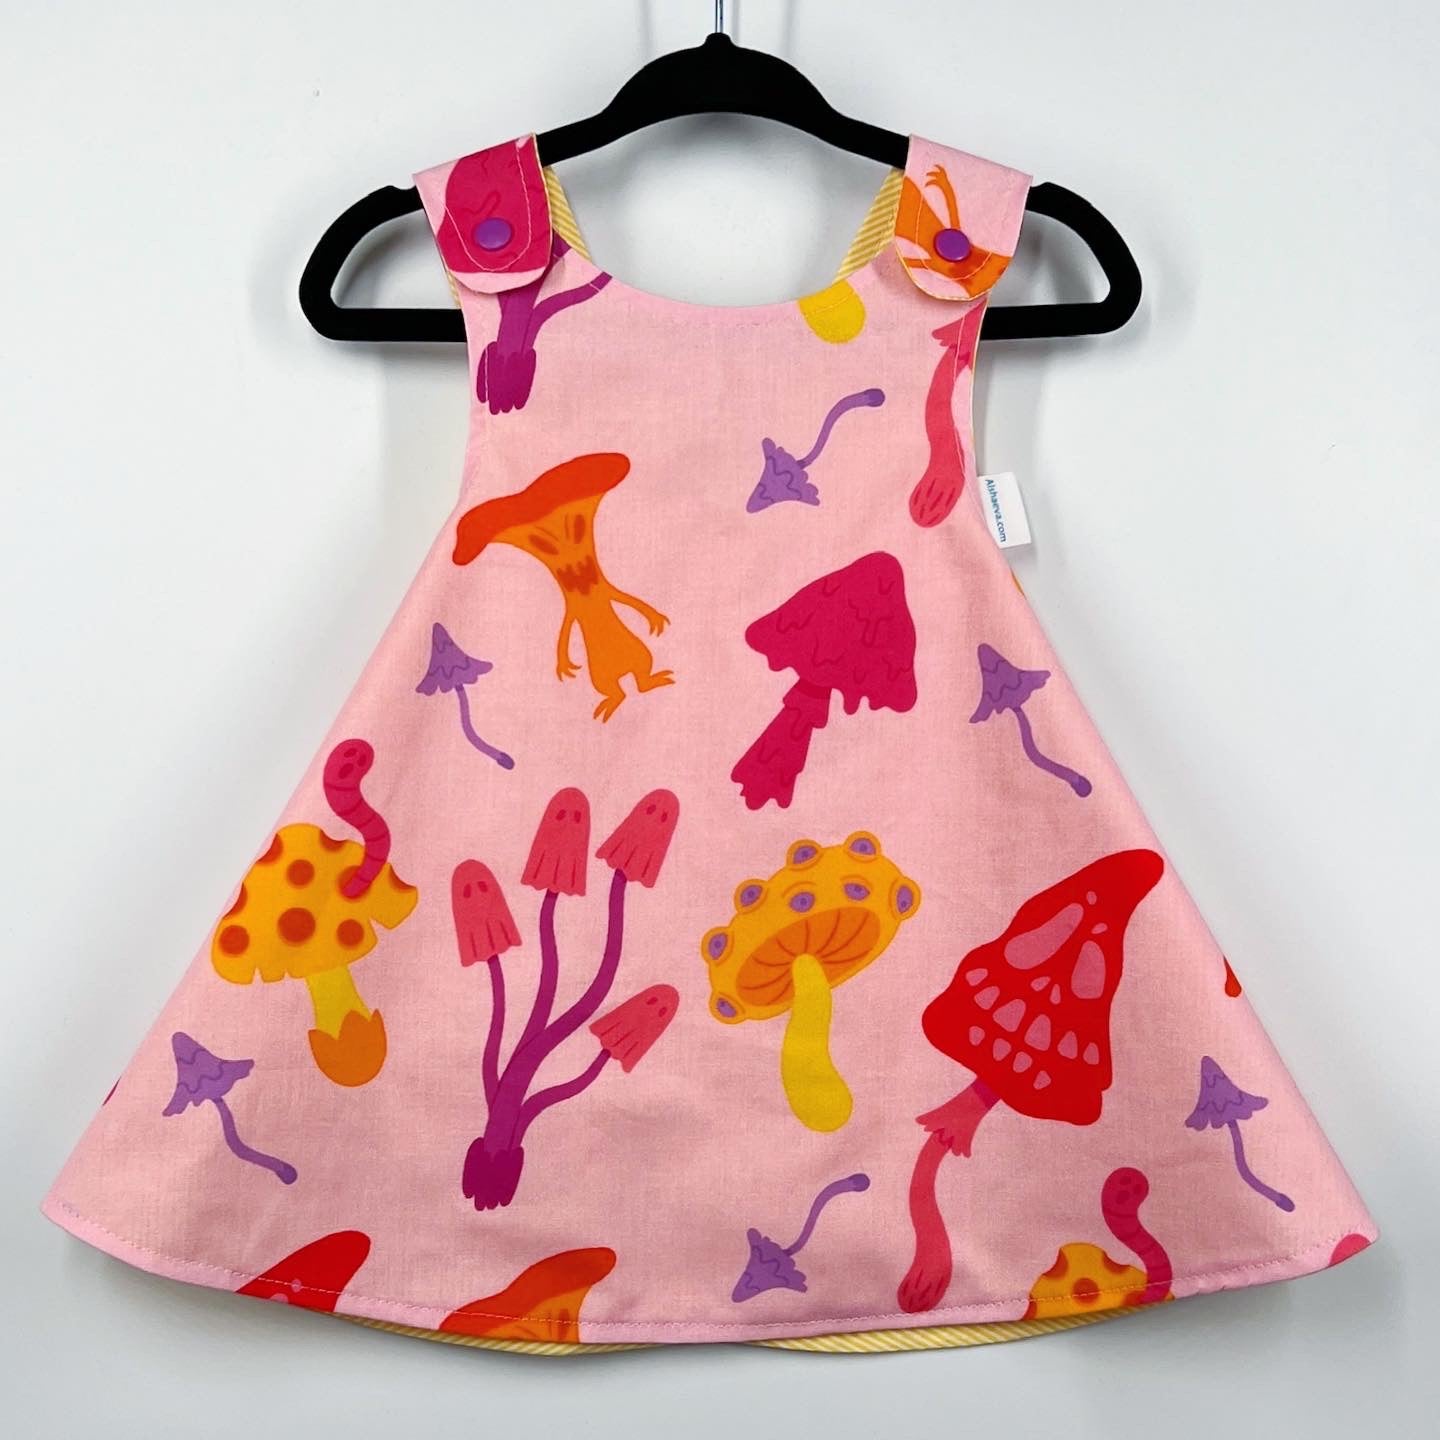 Spooky reversible dress “Mushrooms ” in pink